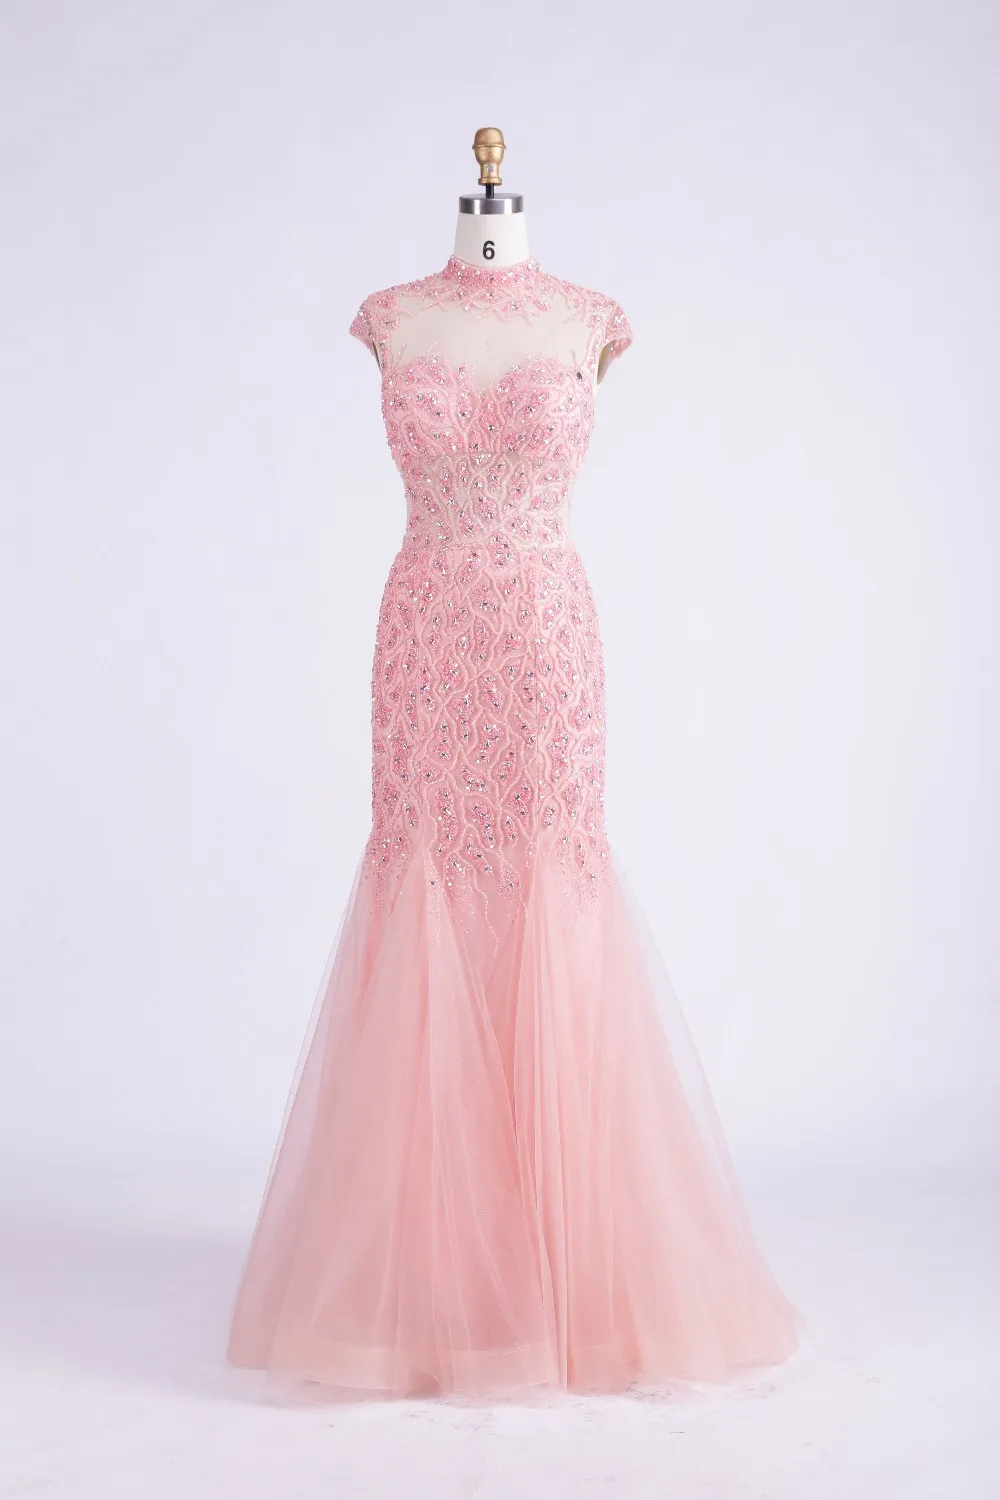 Finove, дизайн, модное розовое Тюлевое платье-Русалка с высокой горловиной, прозрачная спина, бисероплетение, вечерние платья, Длинные вечерние платья - Цвет: Pink